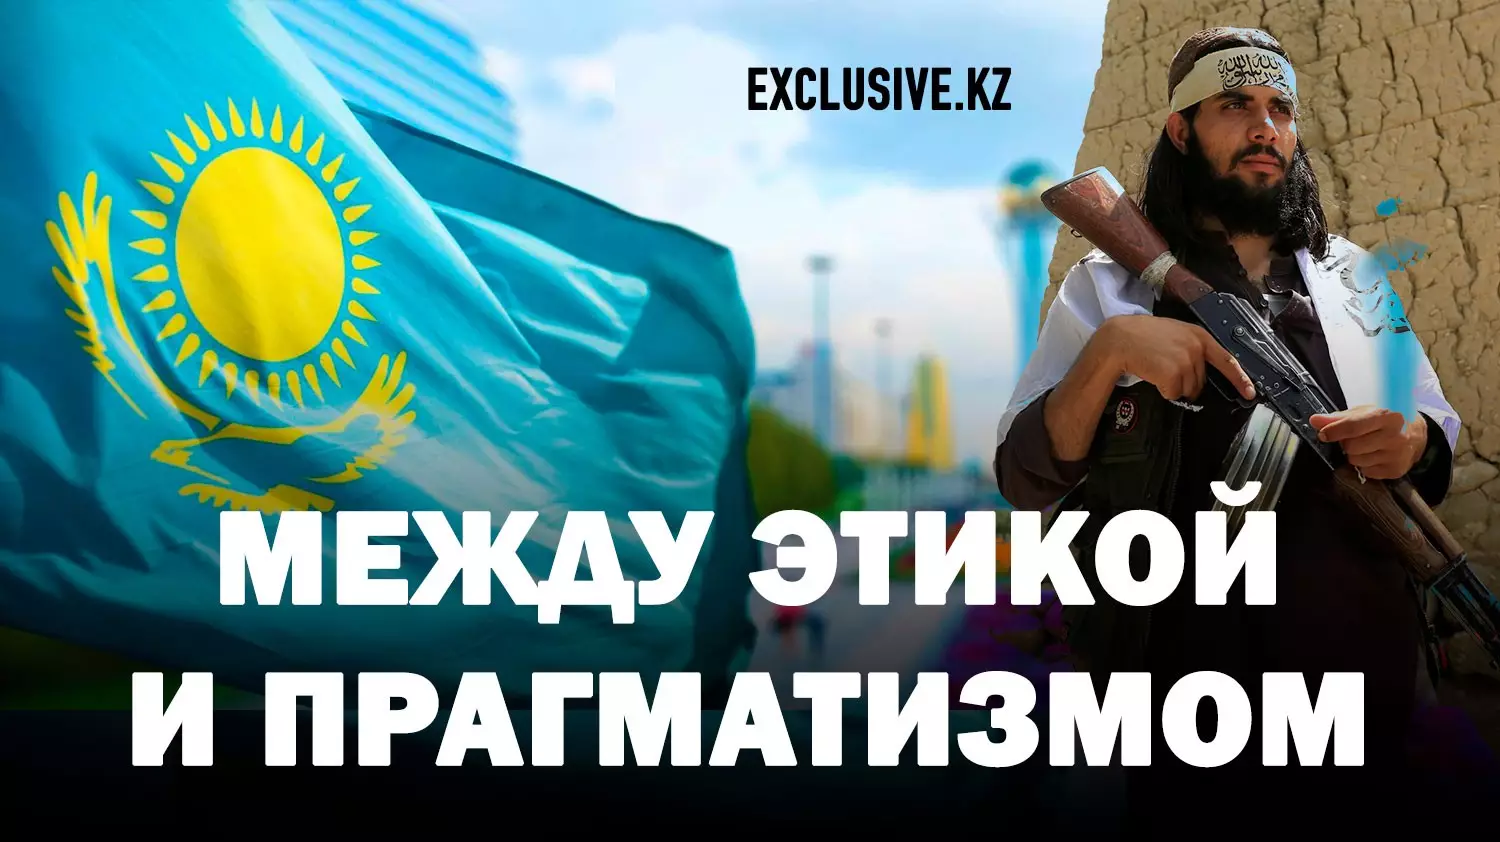 Легализовав «Талибан», Казахстан оправдал использование оружия в политике